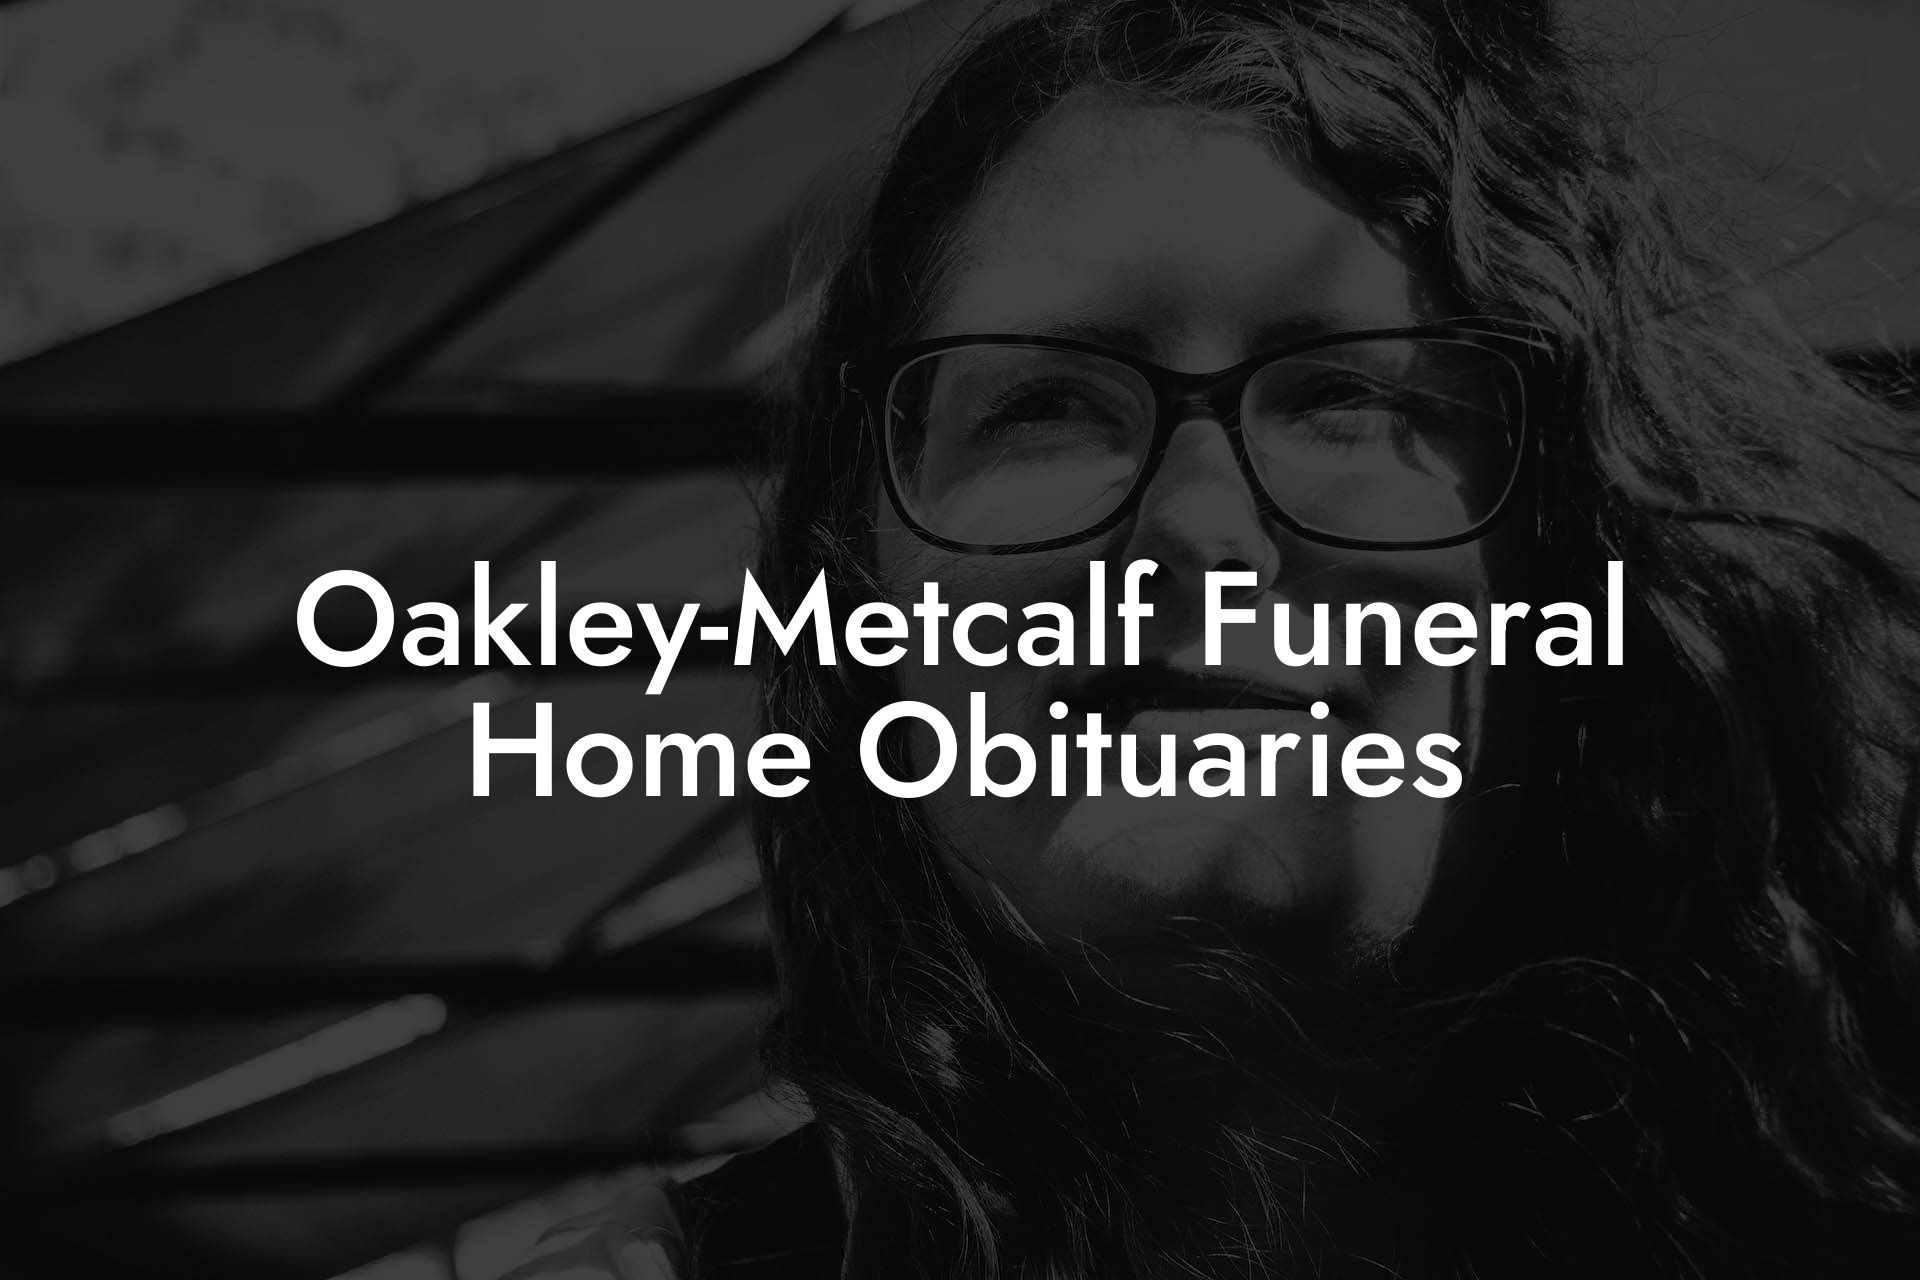 Oakley-Metcalf Funeral Home Obituaries